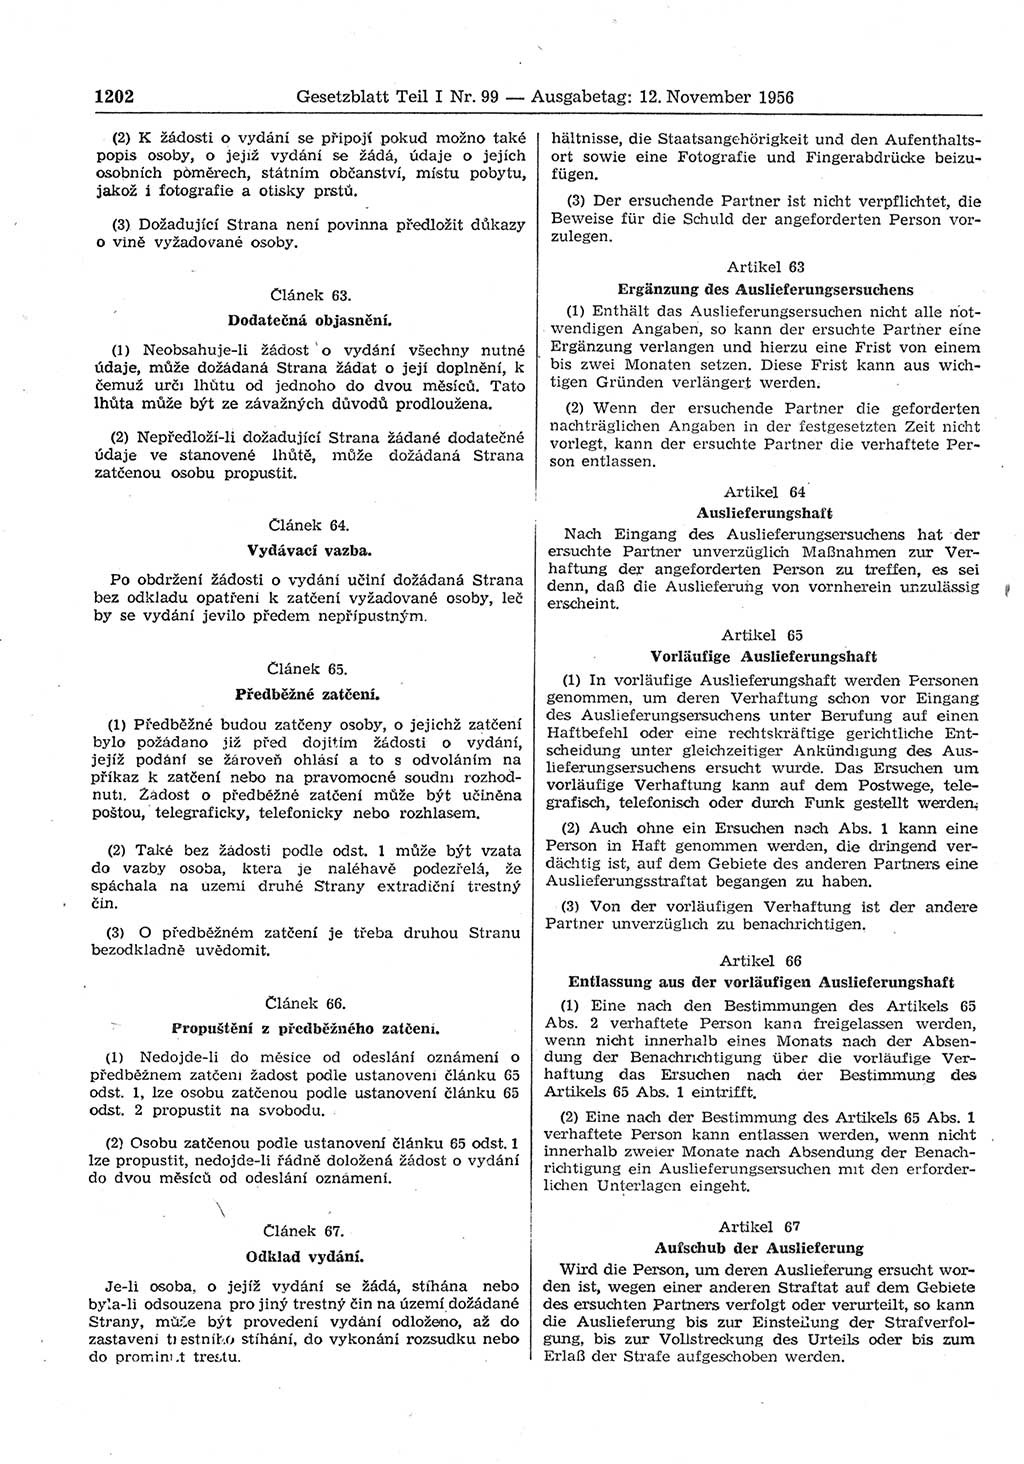 Gesetzblatt (GBl.) der Deutschen Demokratischen Republik (DDR) Teil Ⅰ 1956, Seite 1202 (GBl. DDR Ⅰ 1956, S. 1202)